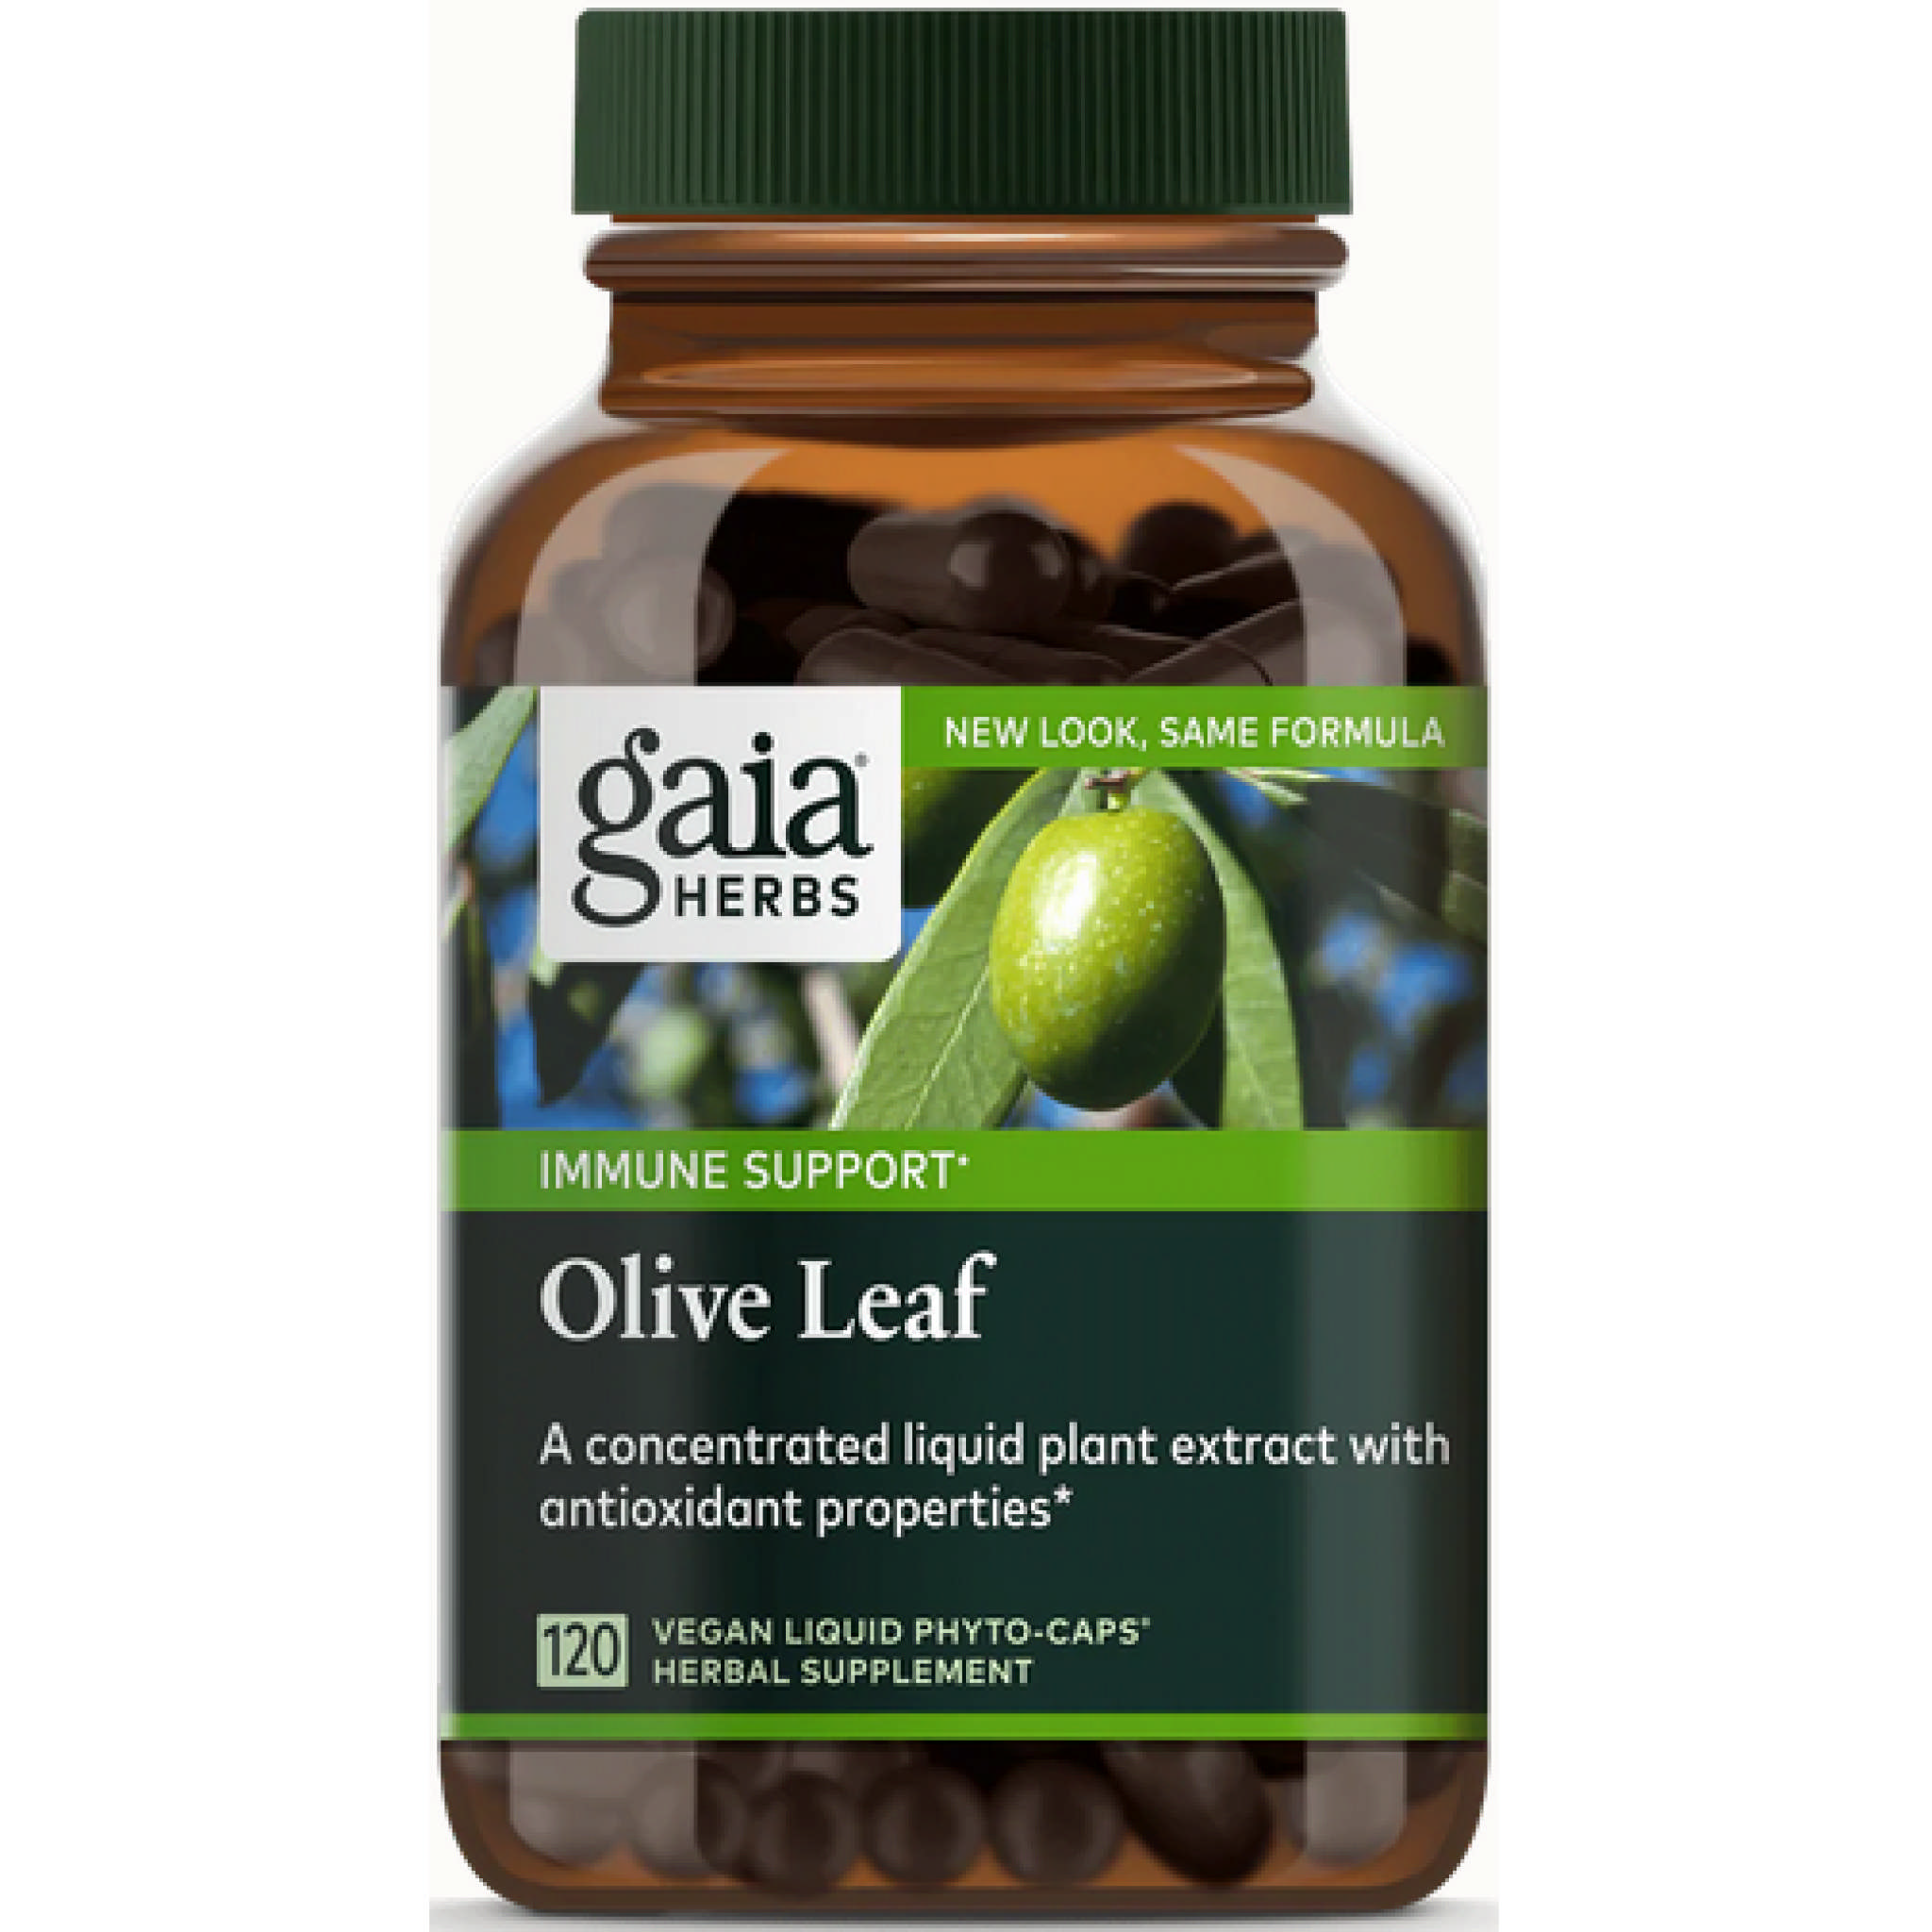 Gaia Herbs - Olive Leaf vCap